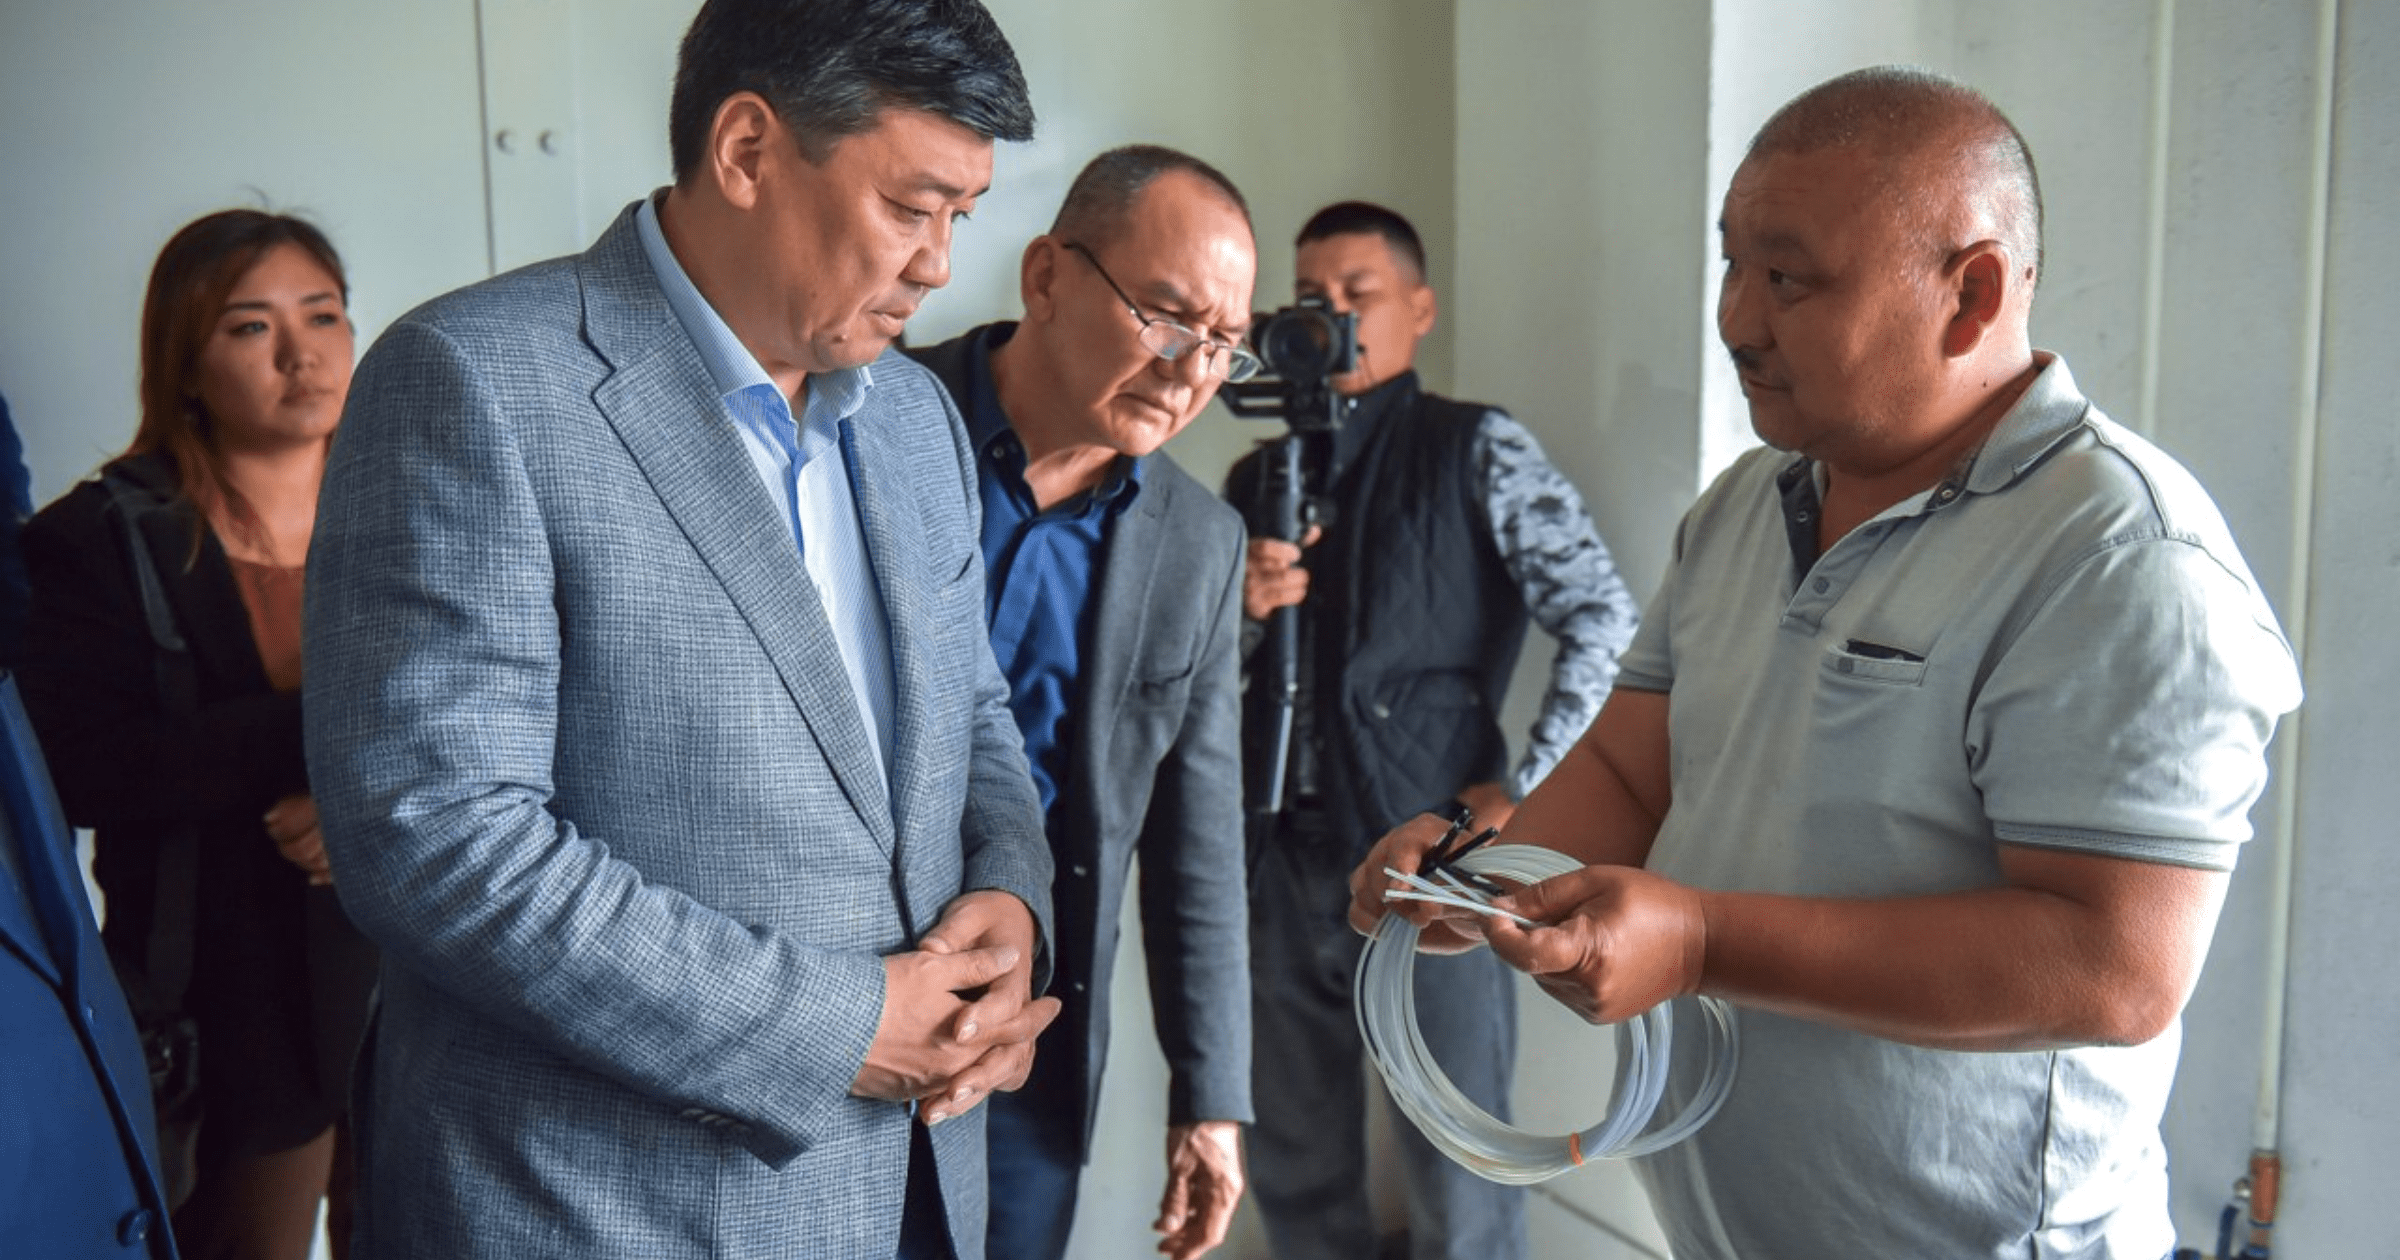 Кыргызско-китайский завод по производству детонаторов простаивает из-за проблем с сырьем — кабмин обещает помочь